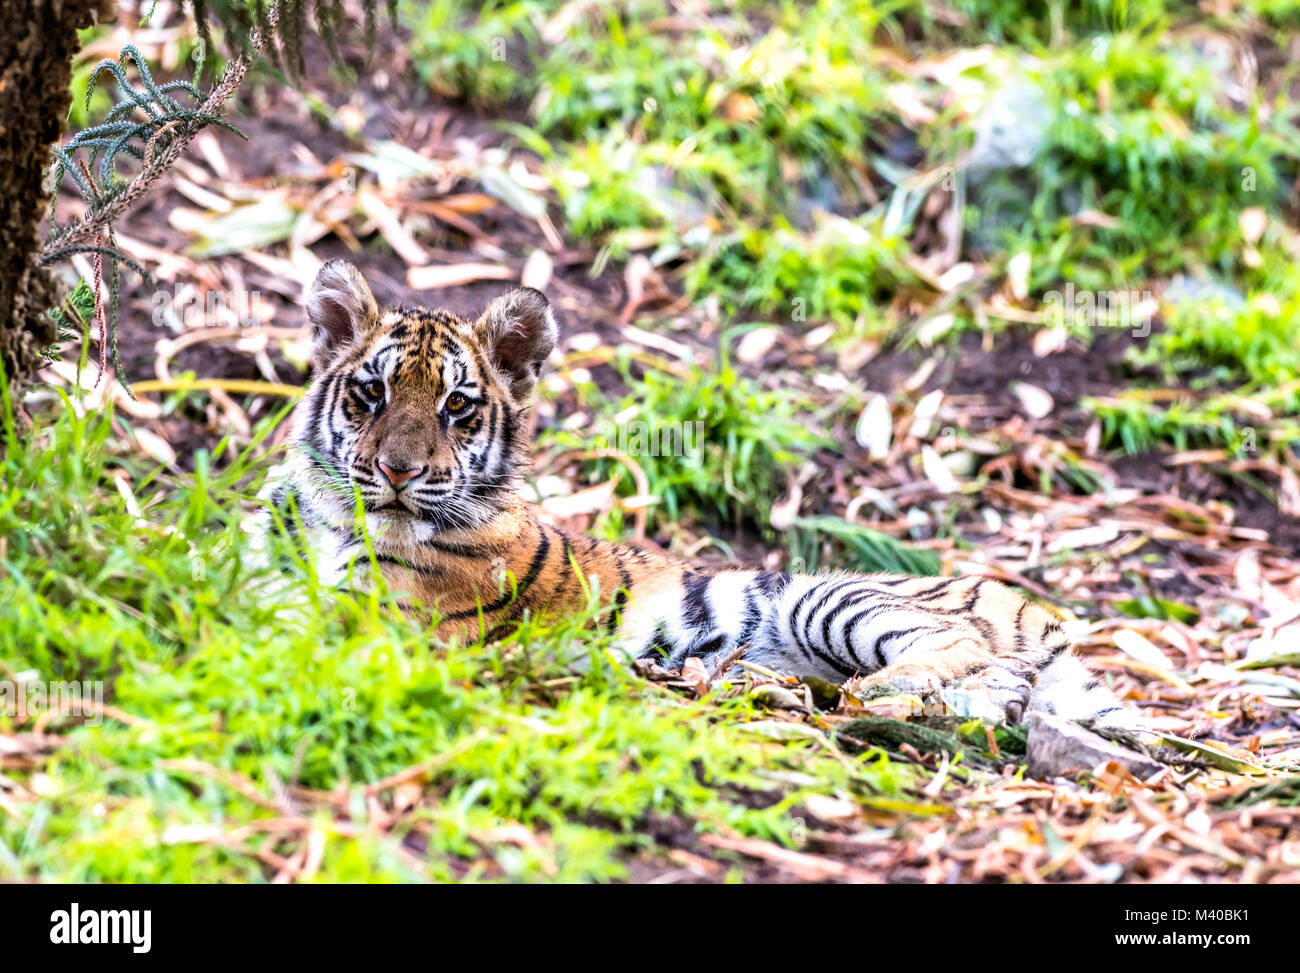 Eine seltene und leistungsstarke Sumatra Tiger liegt in einem schattigen Bereich während einer Safari Stockfoto